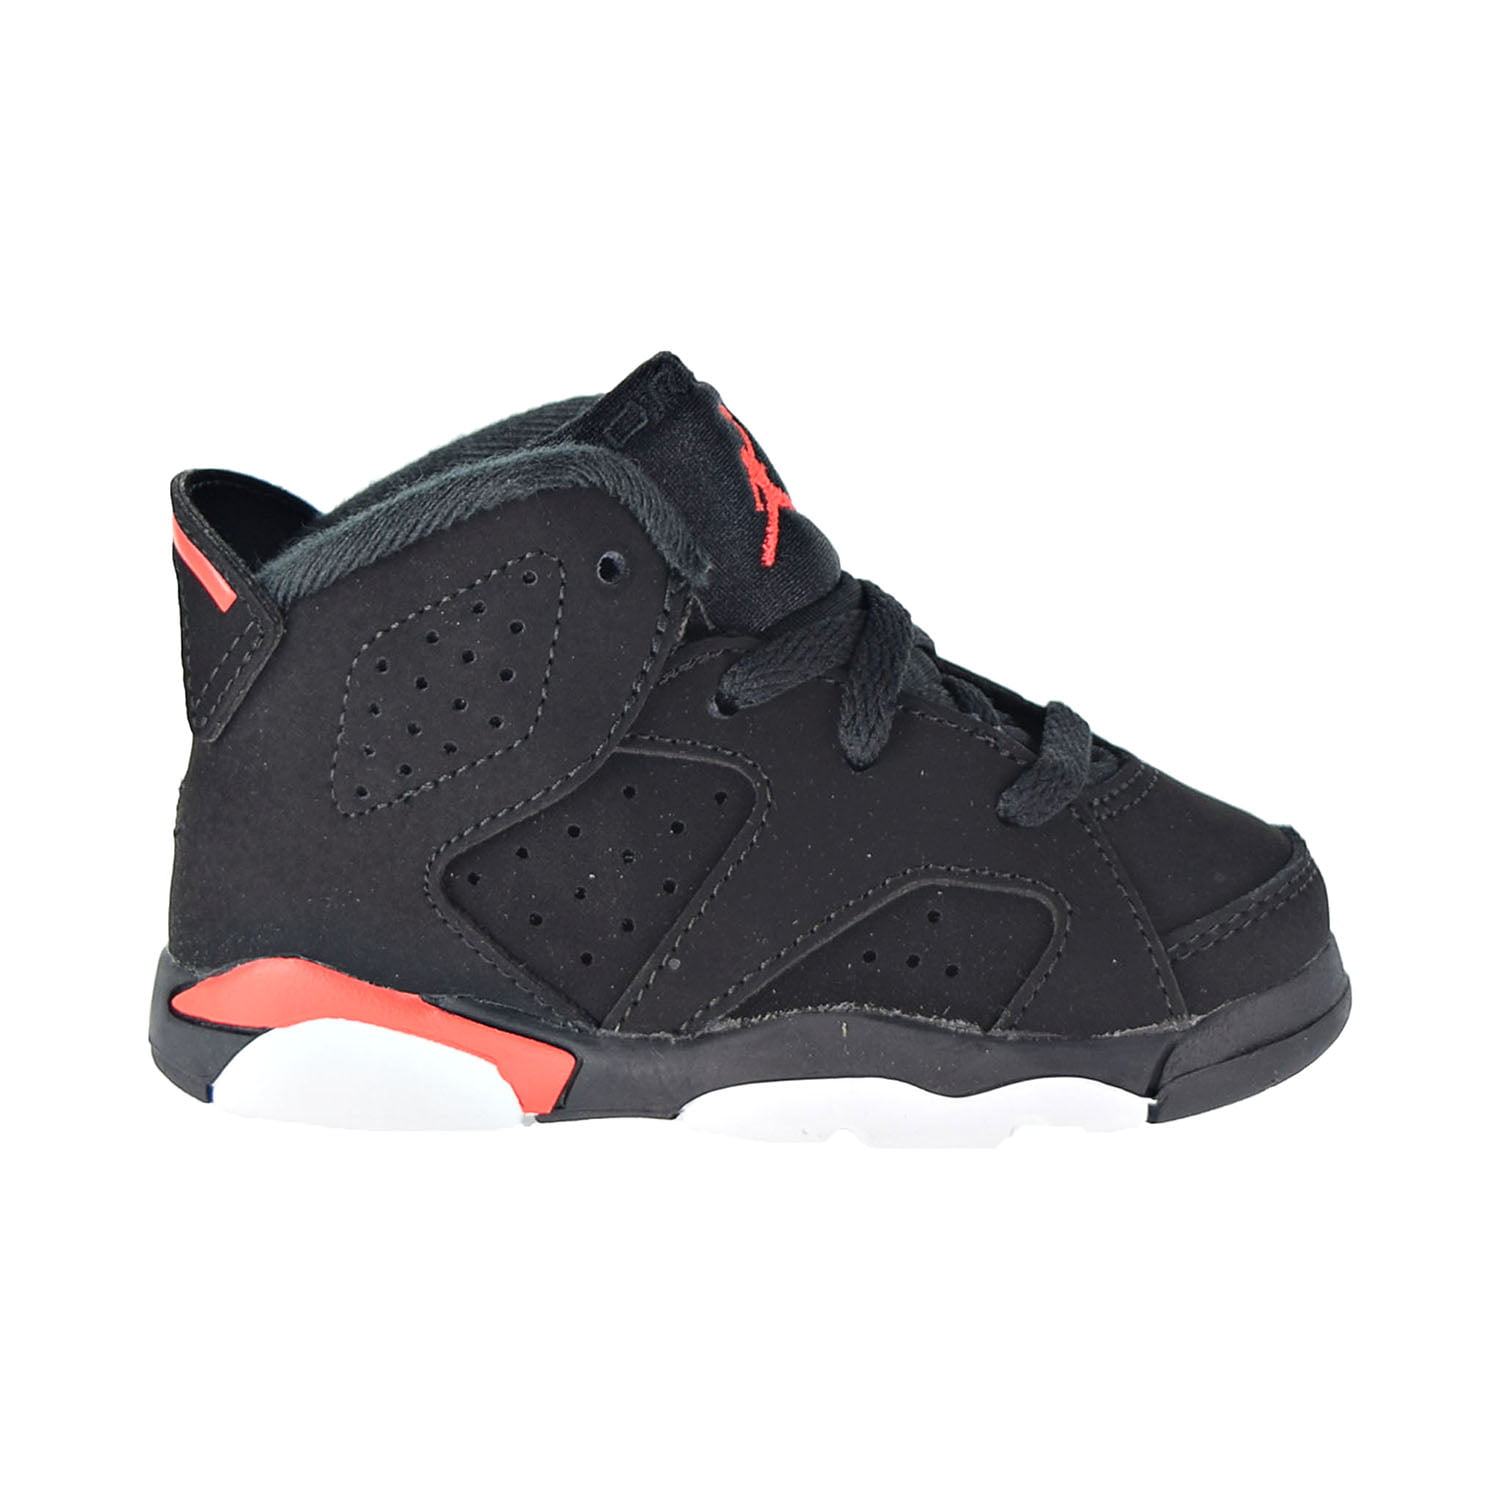 Activo estoy de acuerdo orar Jordan 6 Retro (TD) Toddler Shoes Black-Infrared 384667-060 - Walmart.com